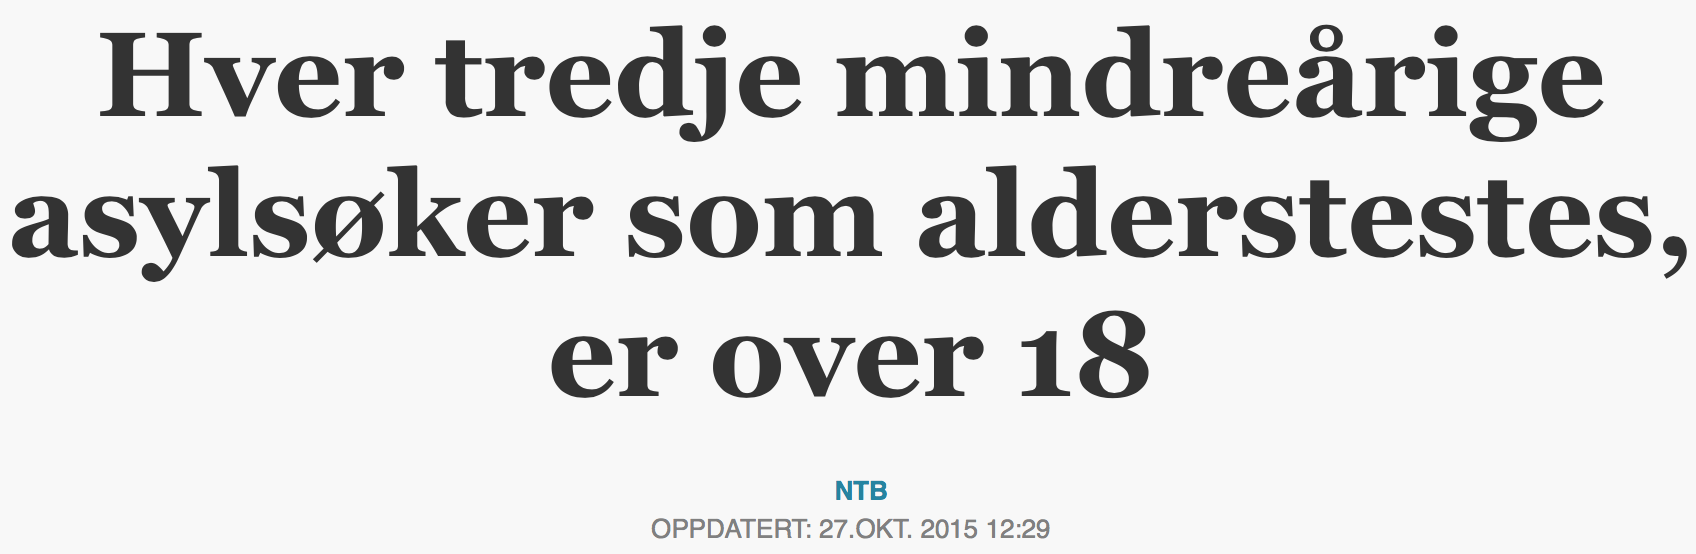 Hver tredje mindreårige Aftenposten2.11 2015